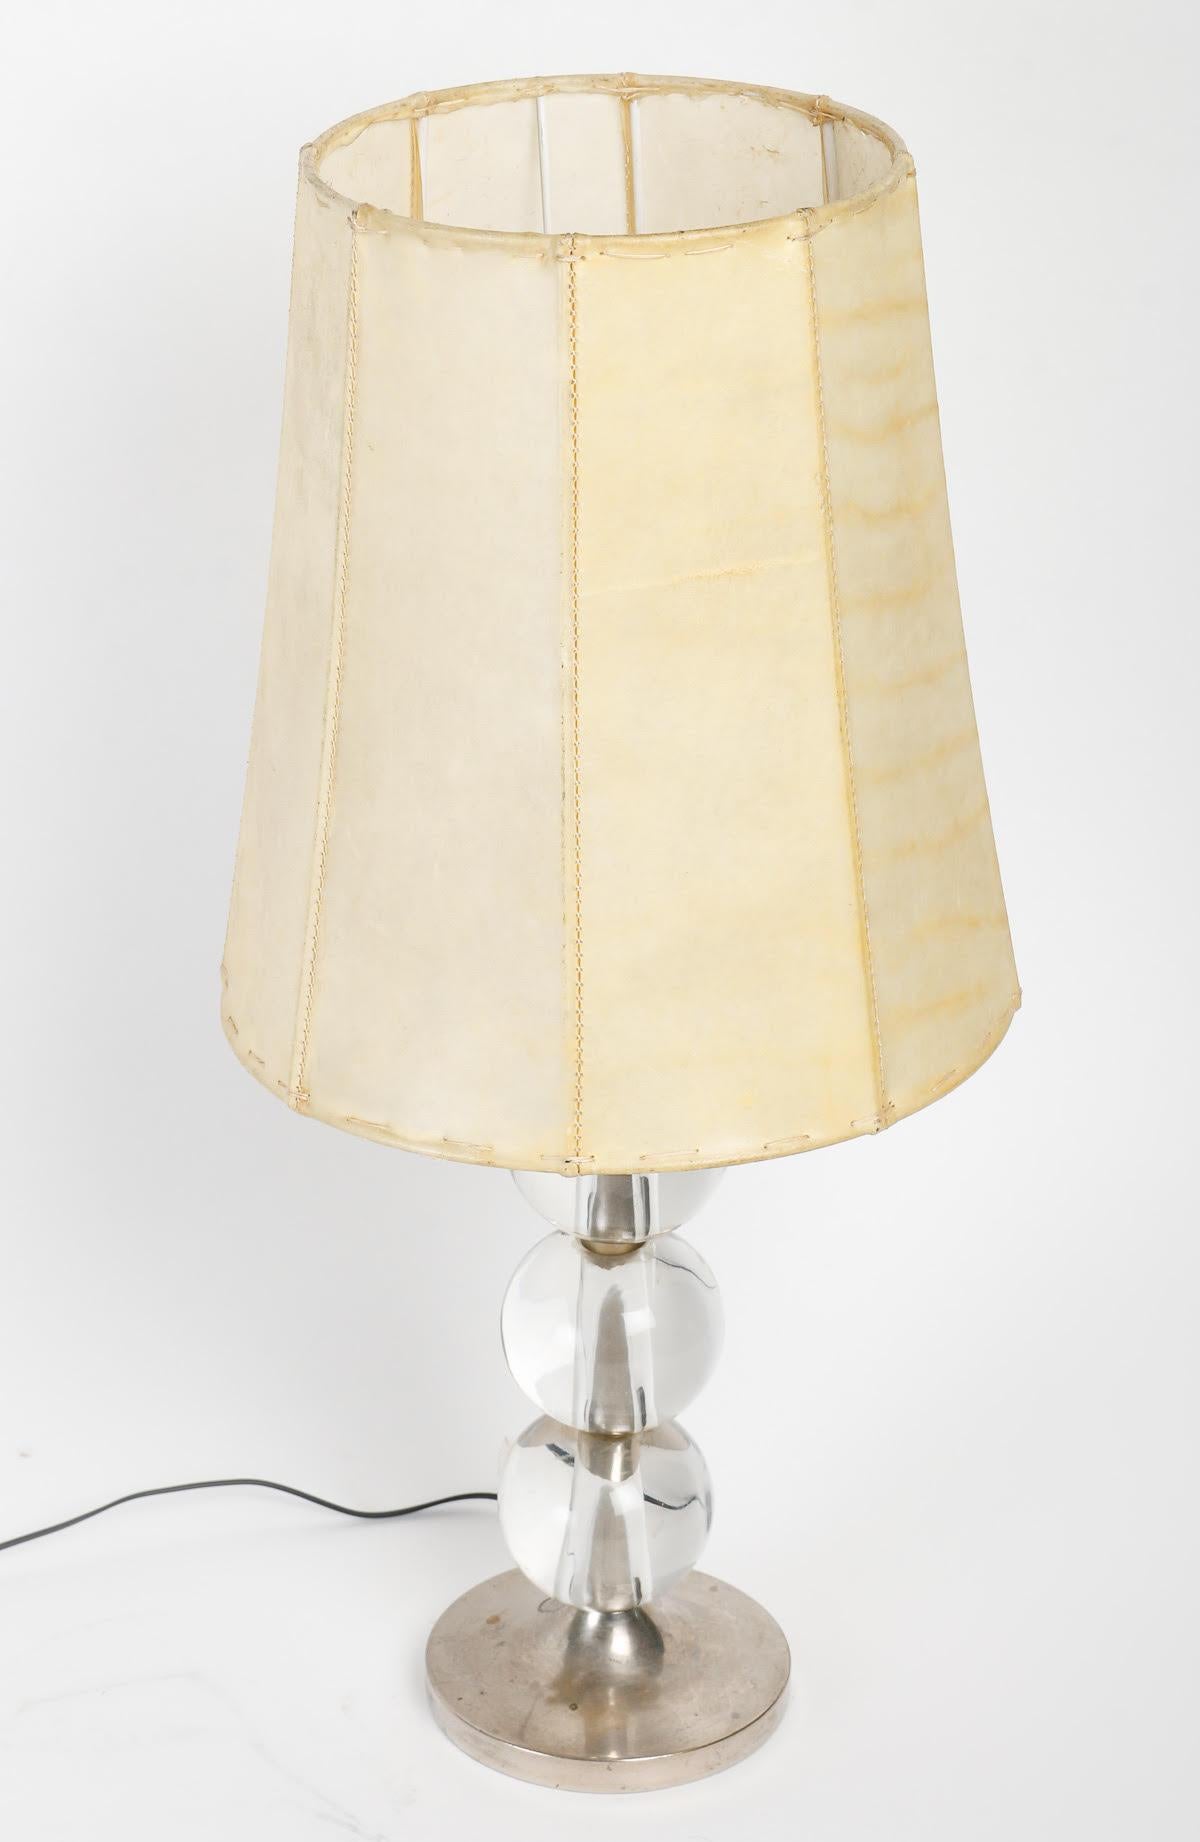 Lampe de table par Adnet, vers 1930, période Art déco. Bon état à Saint-Ouen, FR